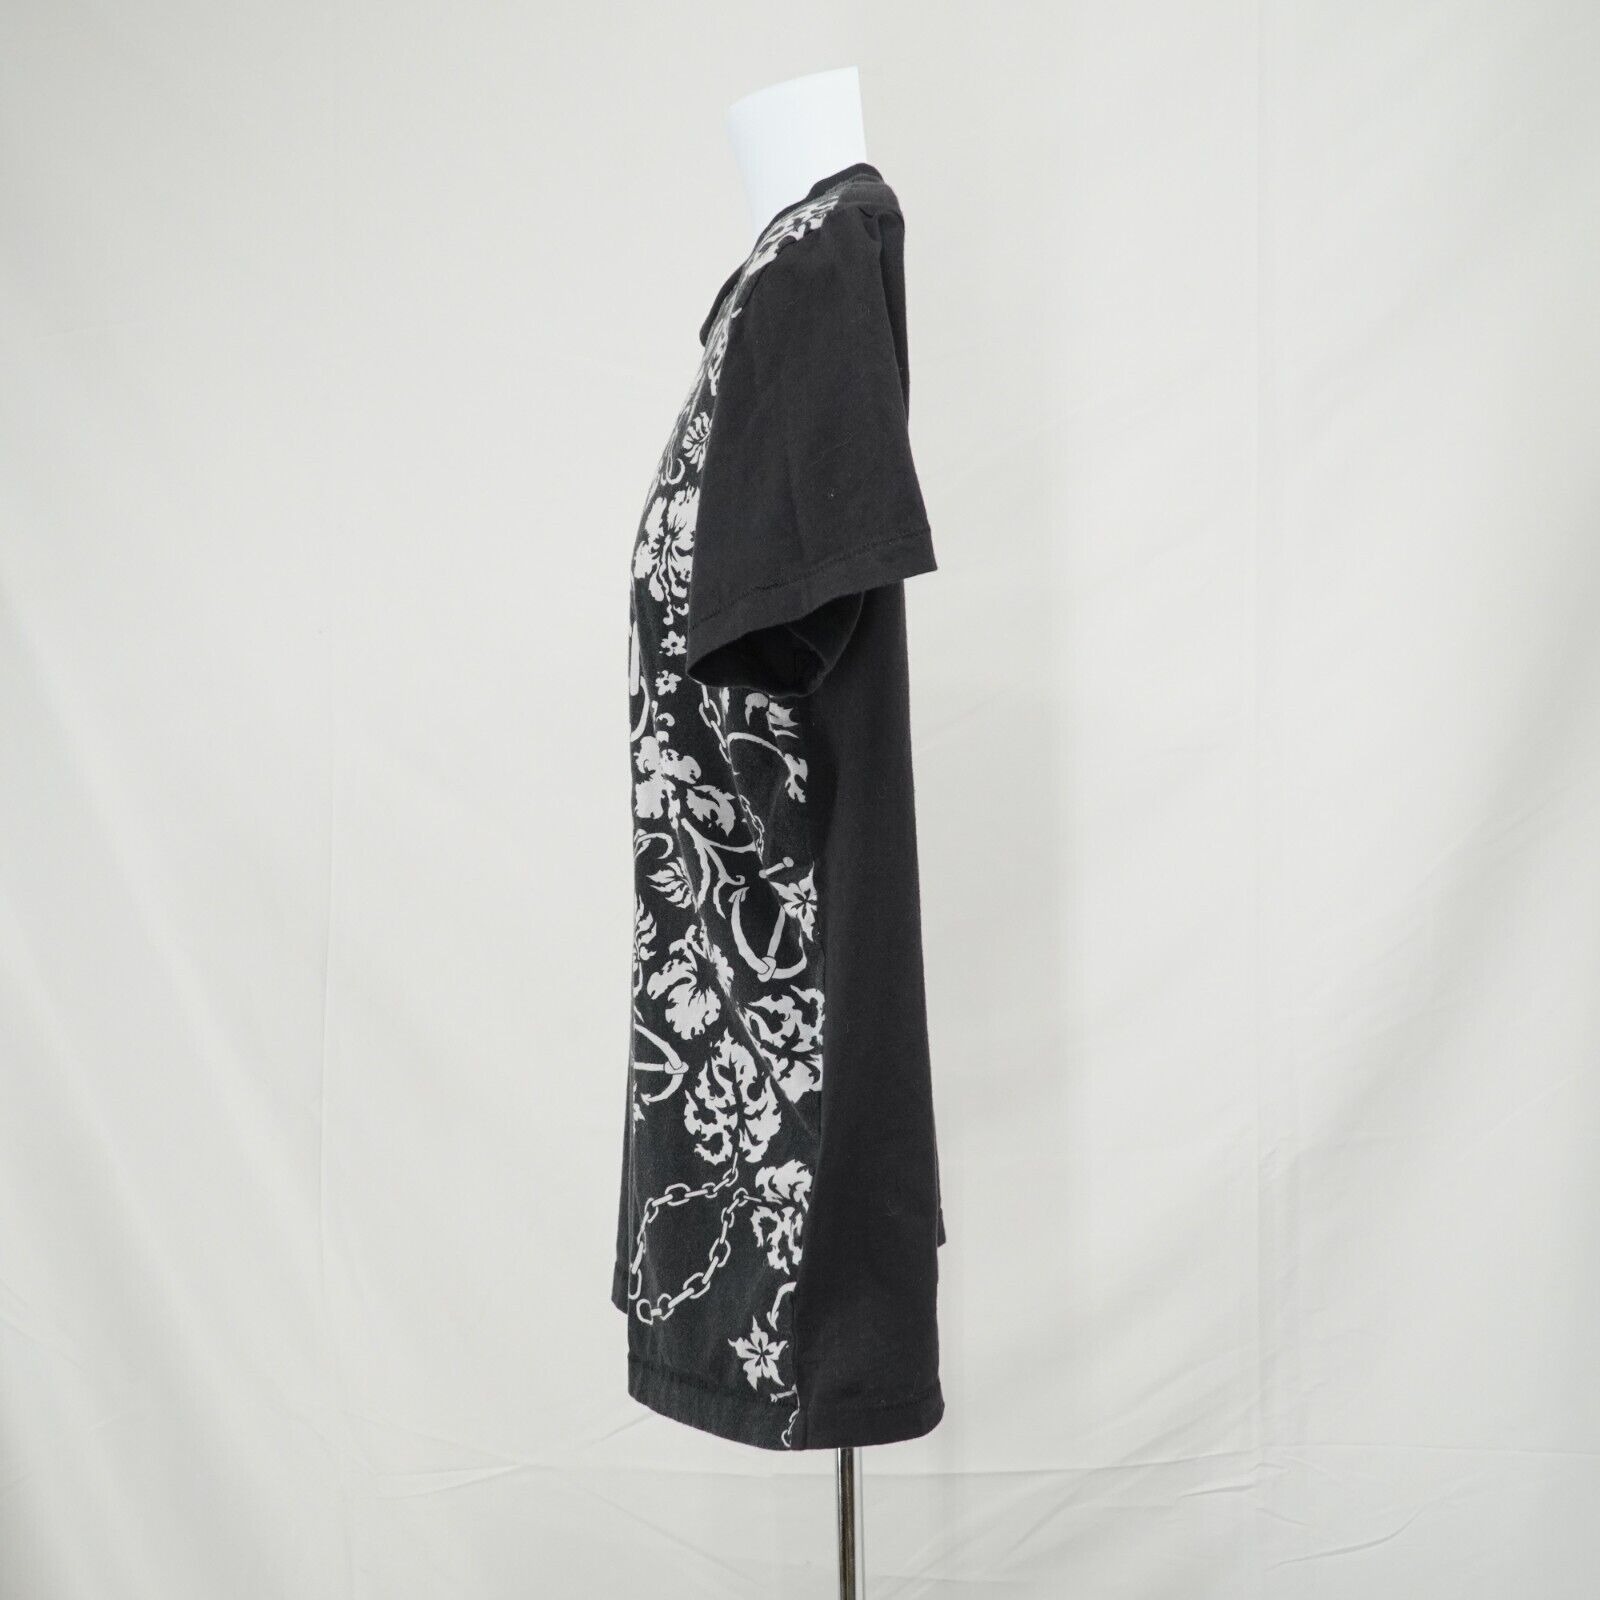 Black White Printed Shirt Floral Chains Anchor Hawaiian Tee - 5